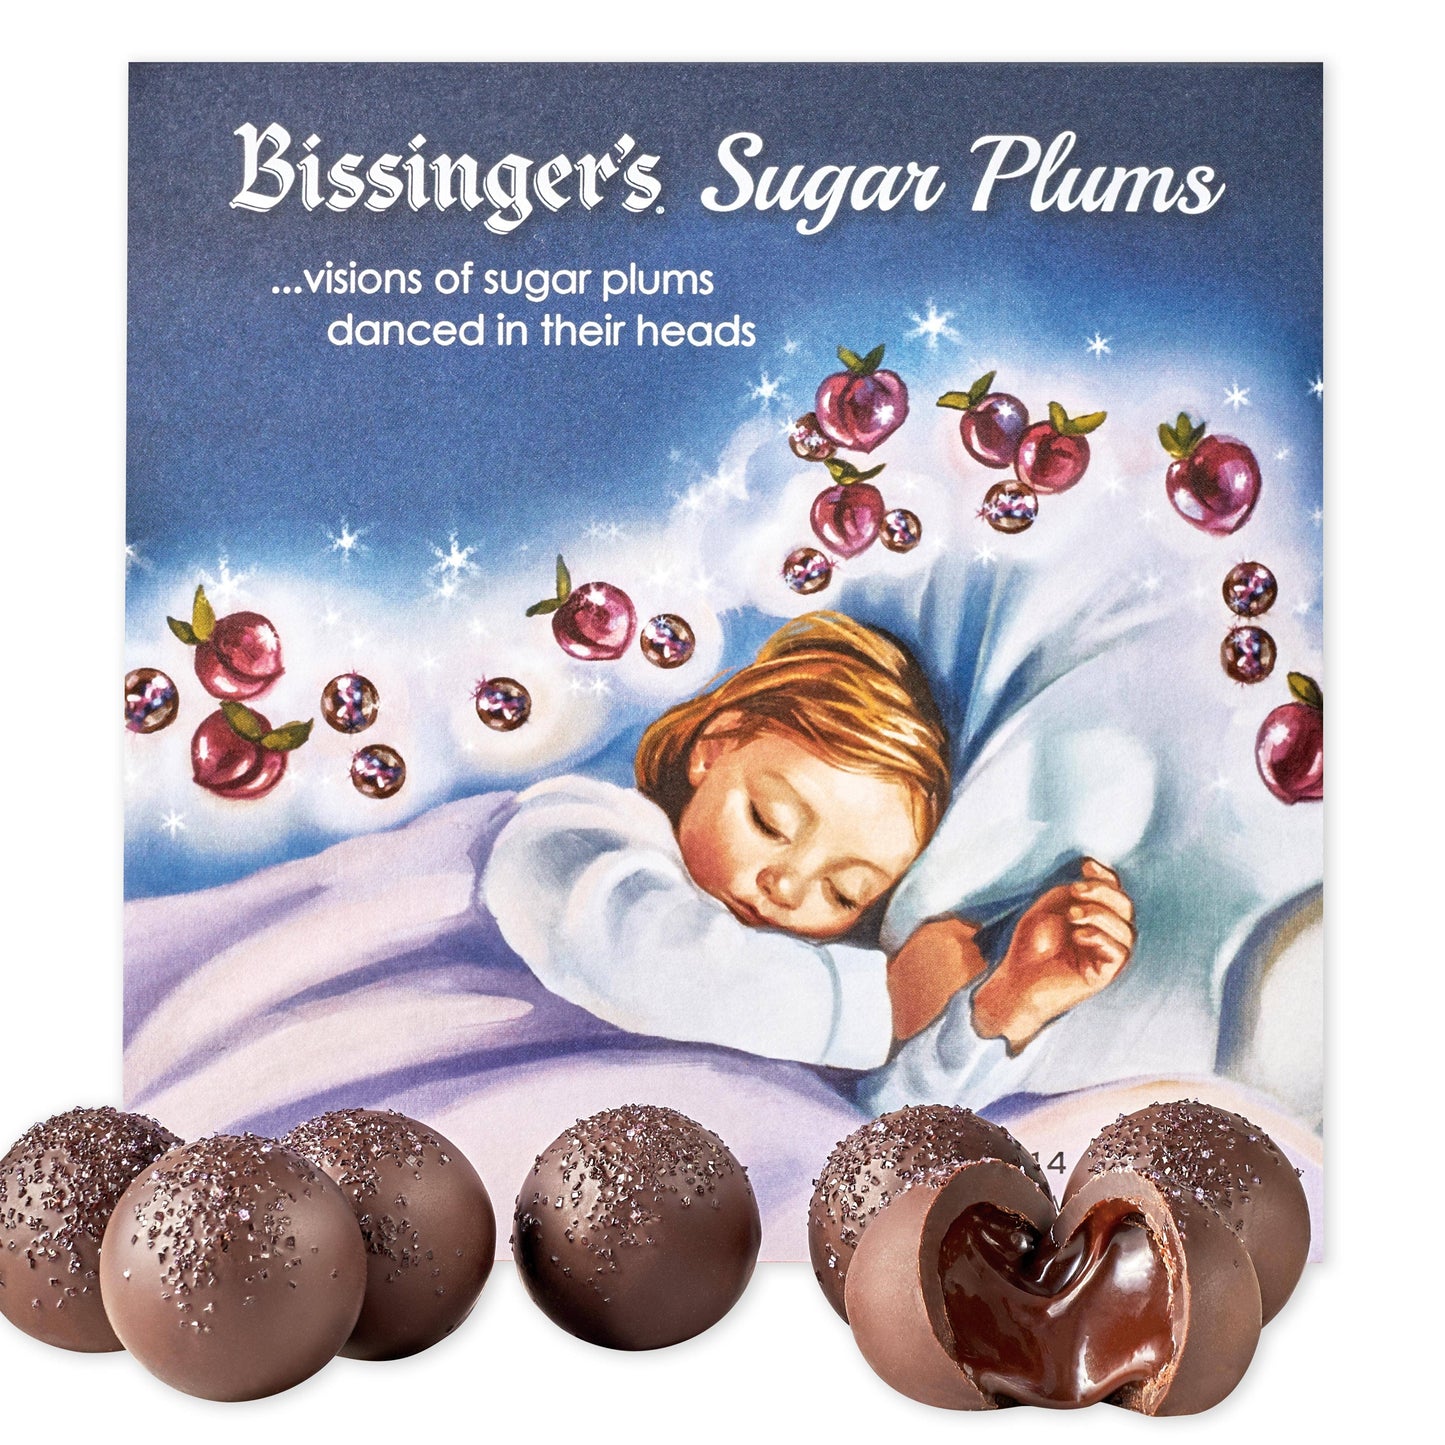 Bissinger's Sugar Plums